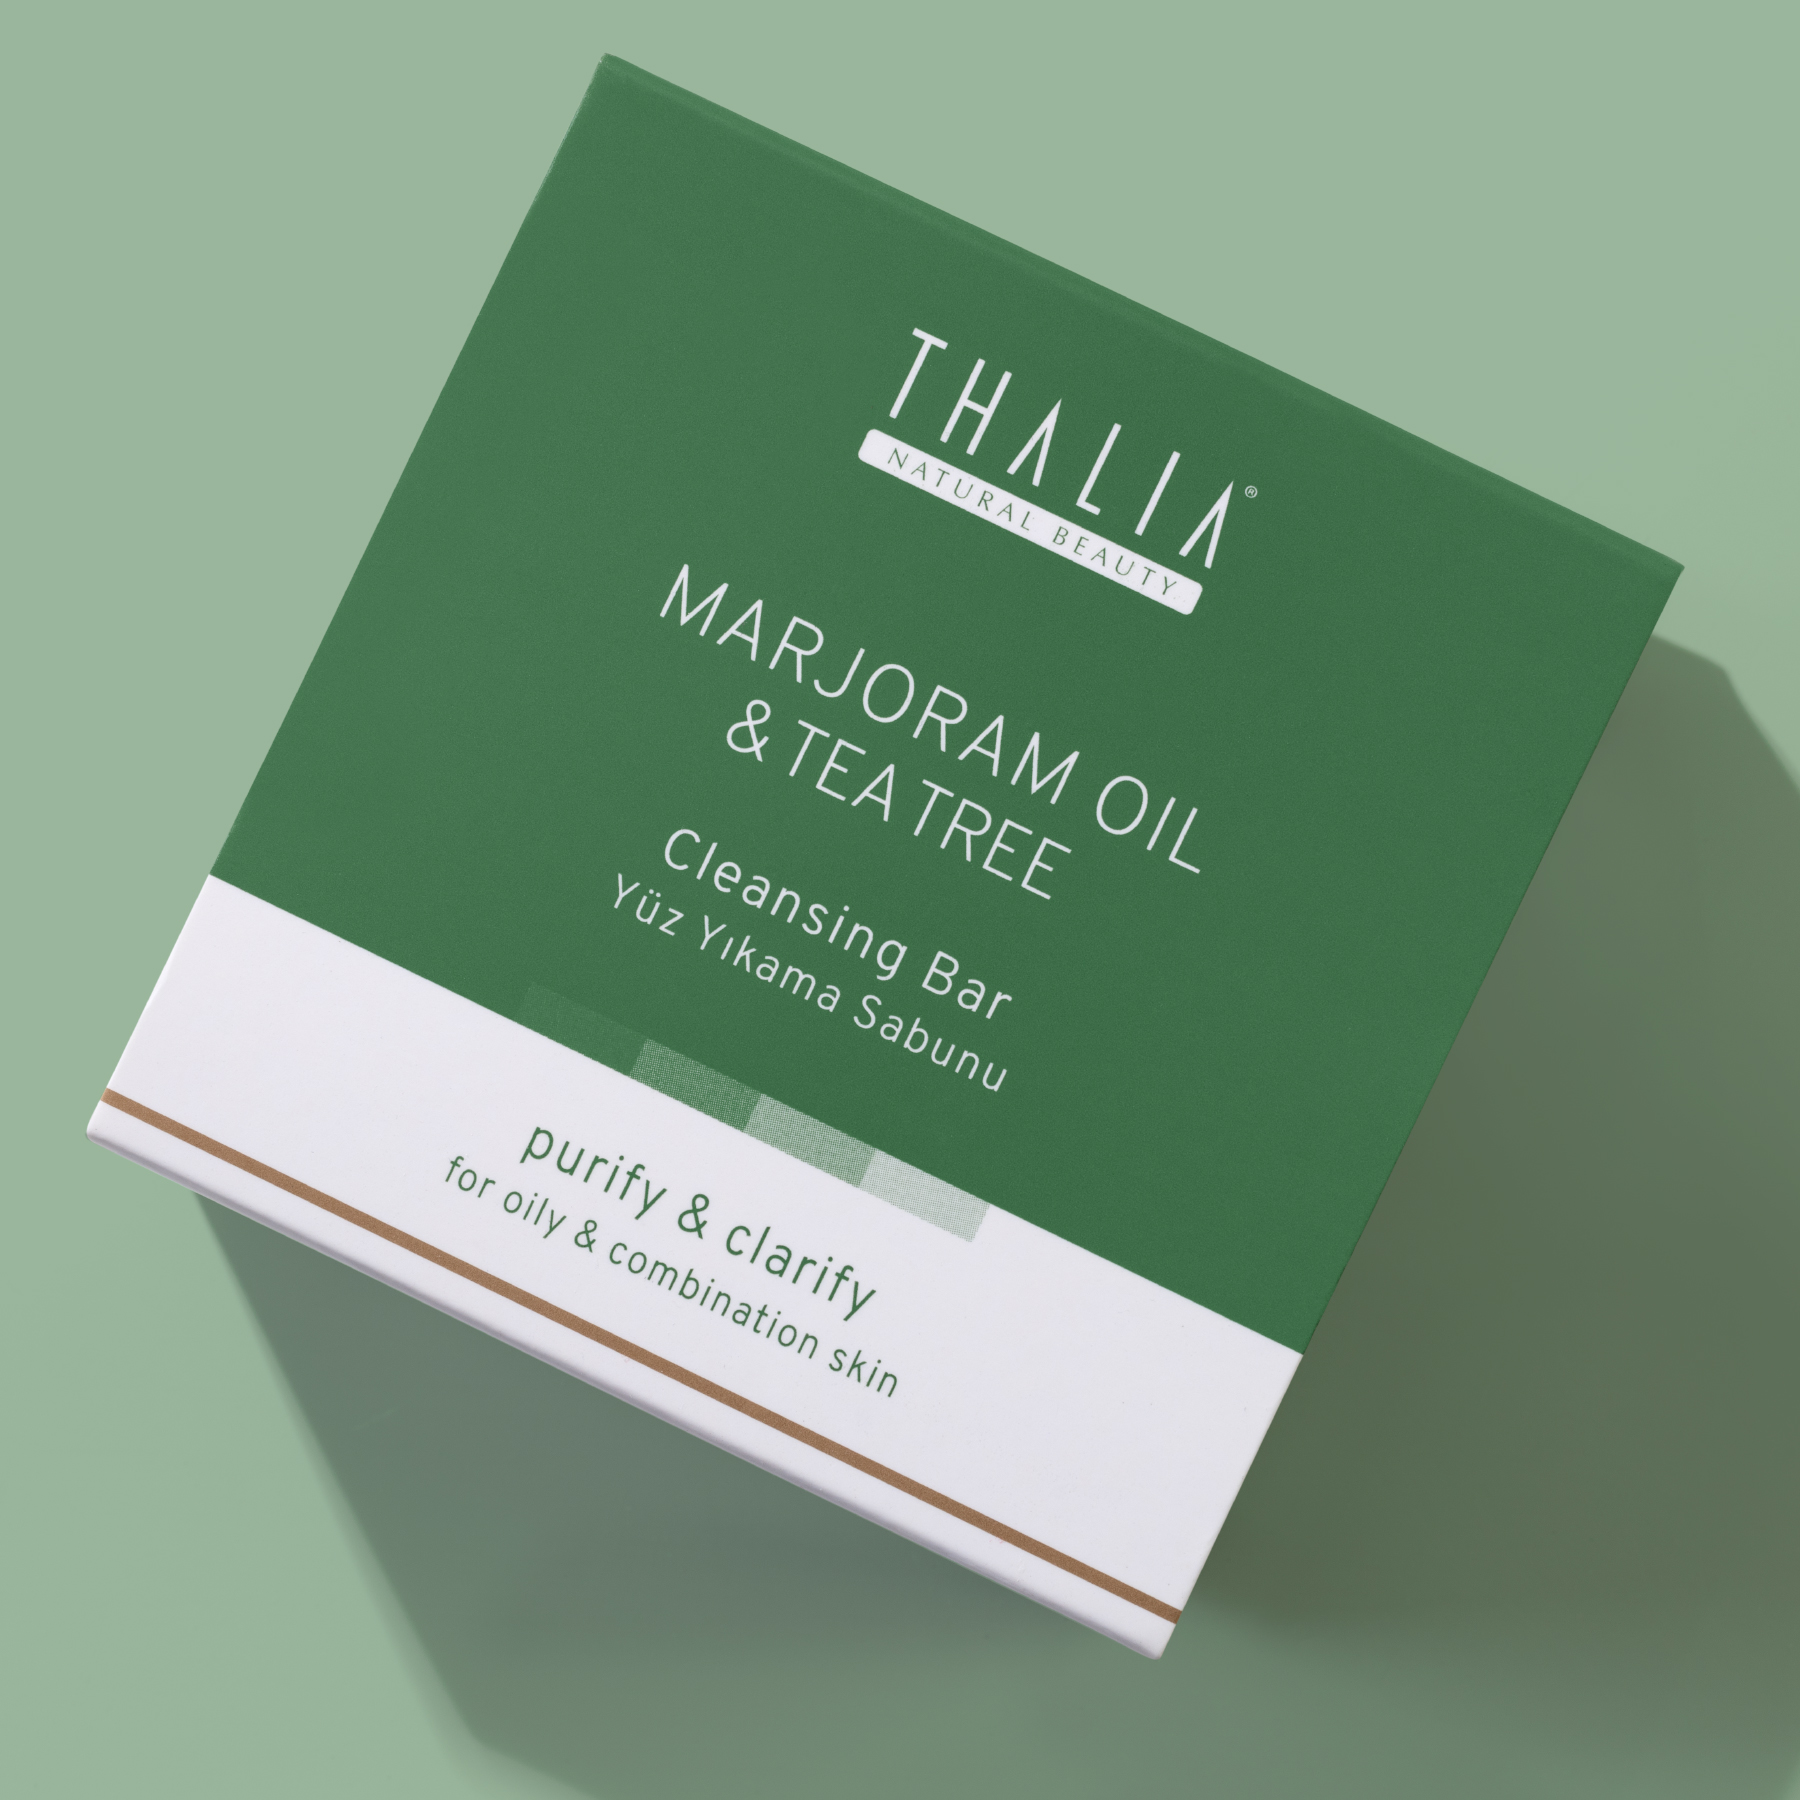 Thalia Akne Gidermeye & Gözenek Sıkılaştırmaya Yardımcı Doğal Katı Sabun 120 gr Mercan Köşk (Marjoram)